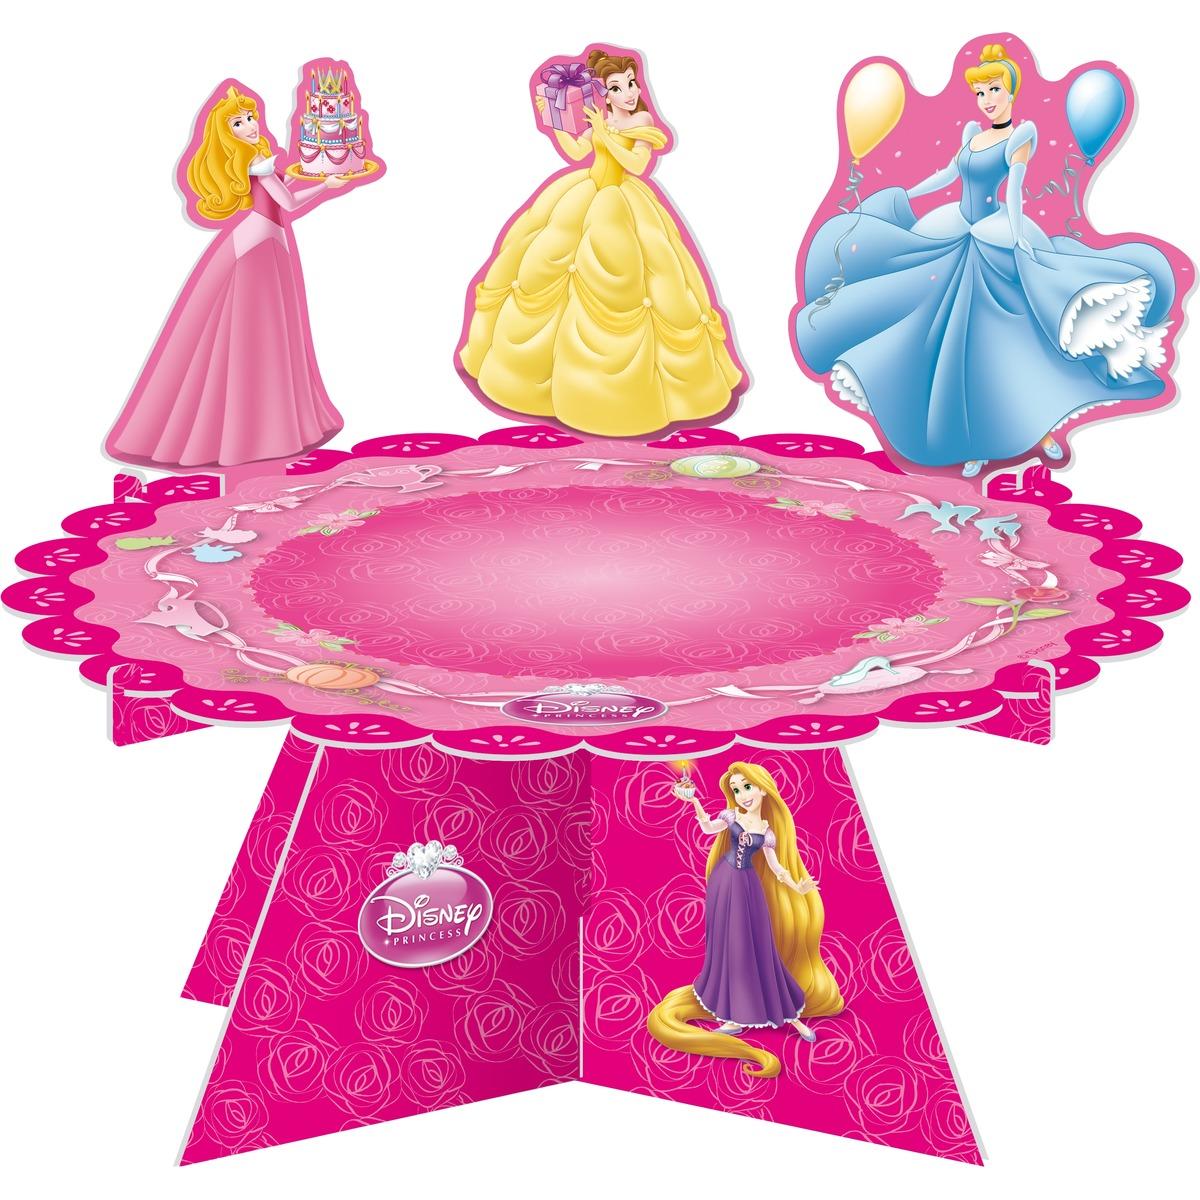 Porte gâteau Princesse en carton - 32 x 16 cm - Multicolore